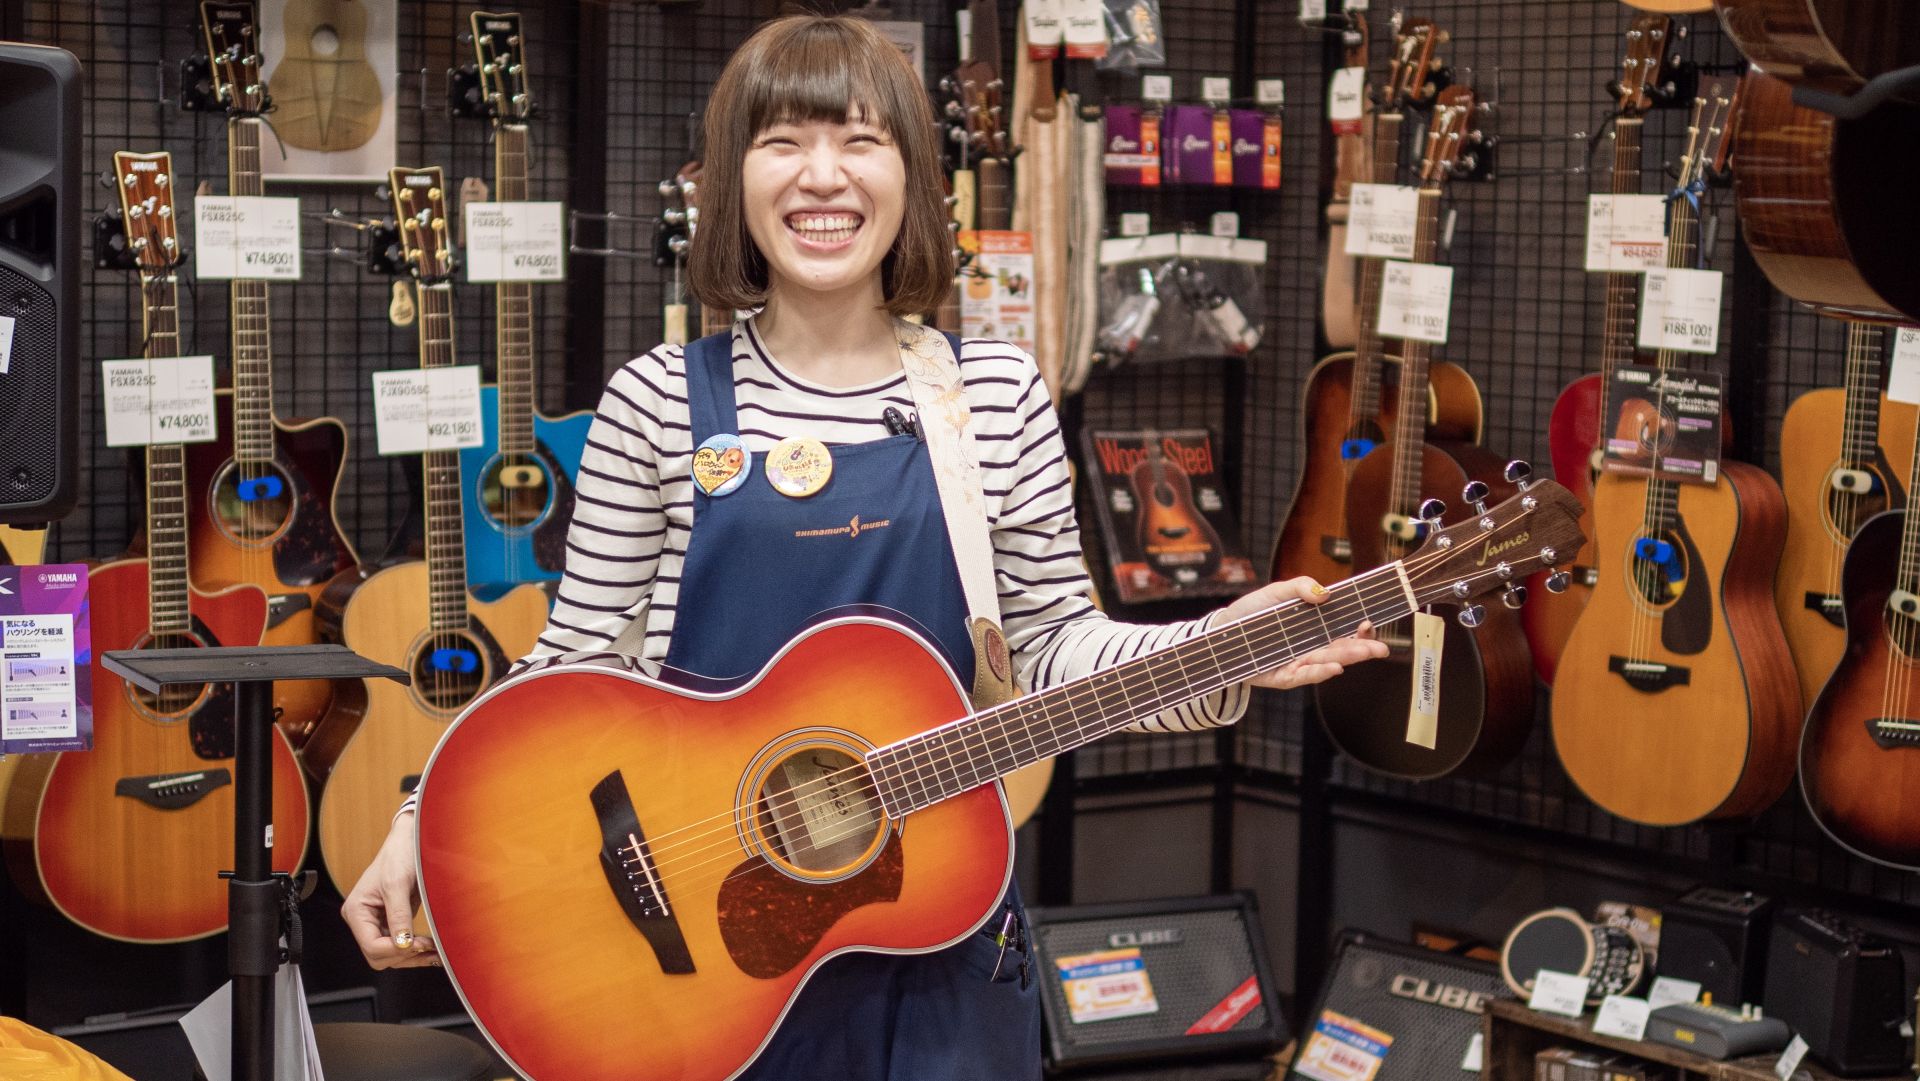 こんにちは。 札幌ステラプレイス店アコースティックギター担当の谷藤です。 これからギターを始めてみたいというお客様から「ギターってどうやって選べばいいの？」という相談を頂く事が良くあります。なので、選ぶために知っておいた方が良いギターのタイプや使われている木材の違いを簡単にご紹介いたします。ギター選 […]